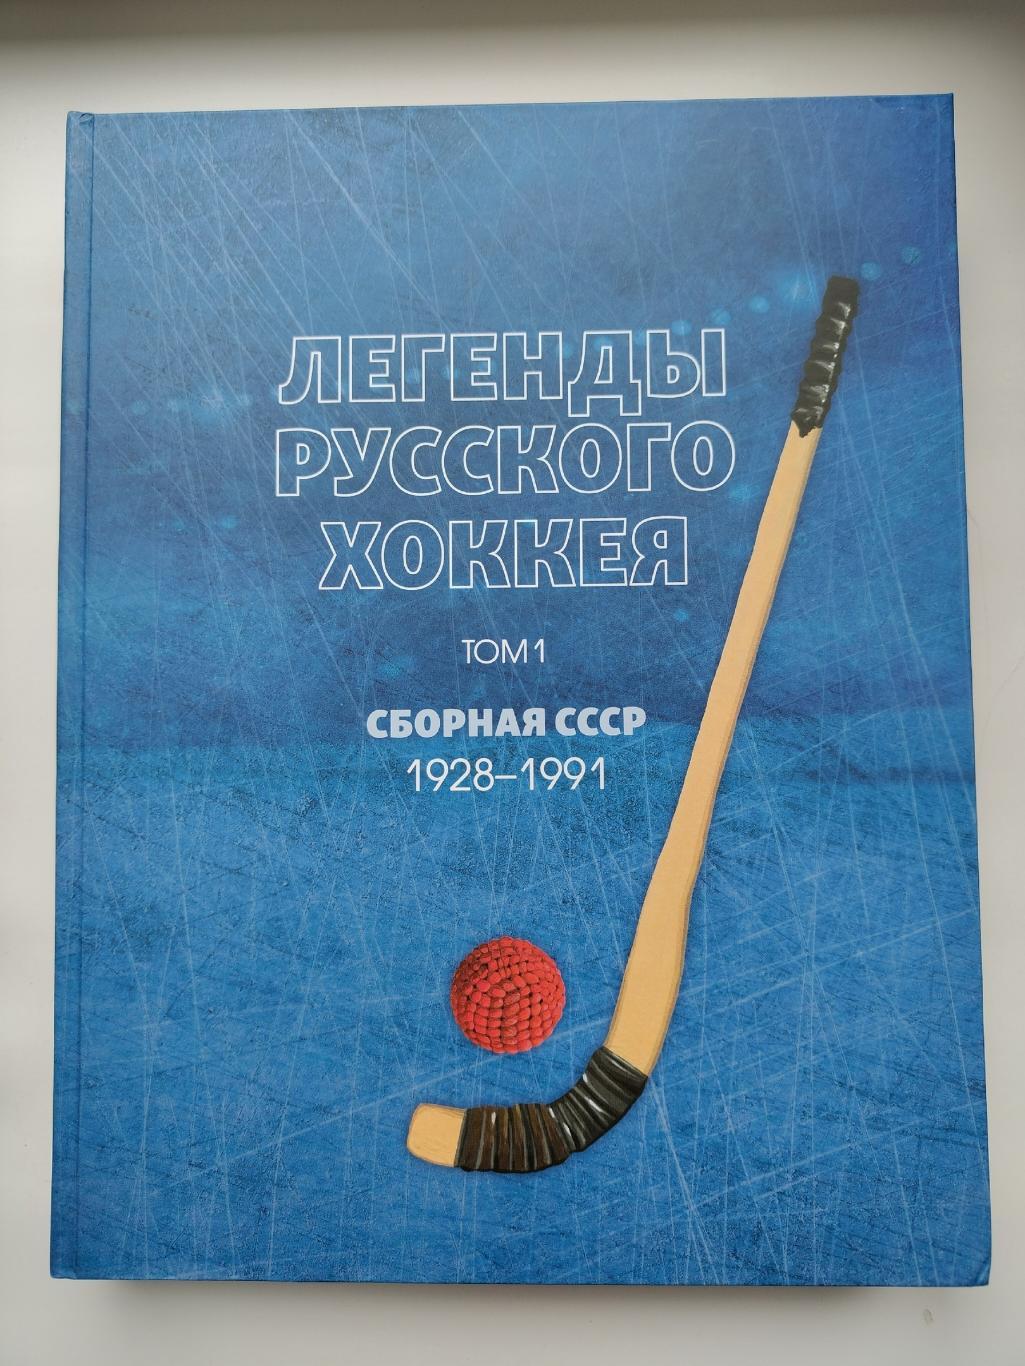 Хоккей с мячом. Легенды русского хоккея 1 том Сборная СССР 1928-1992